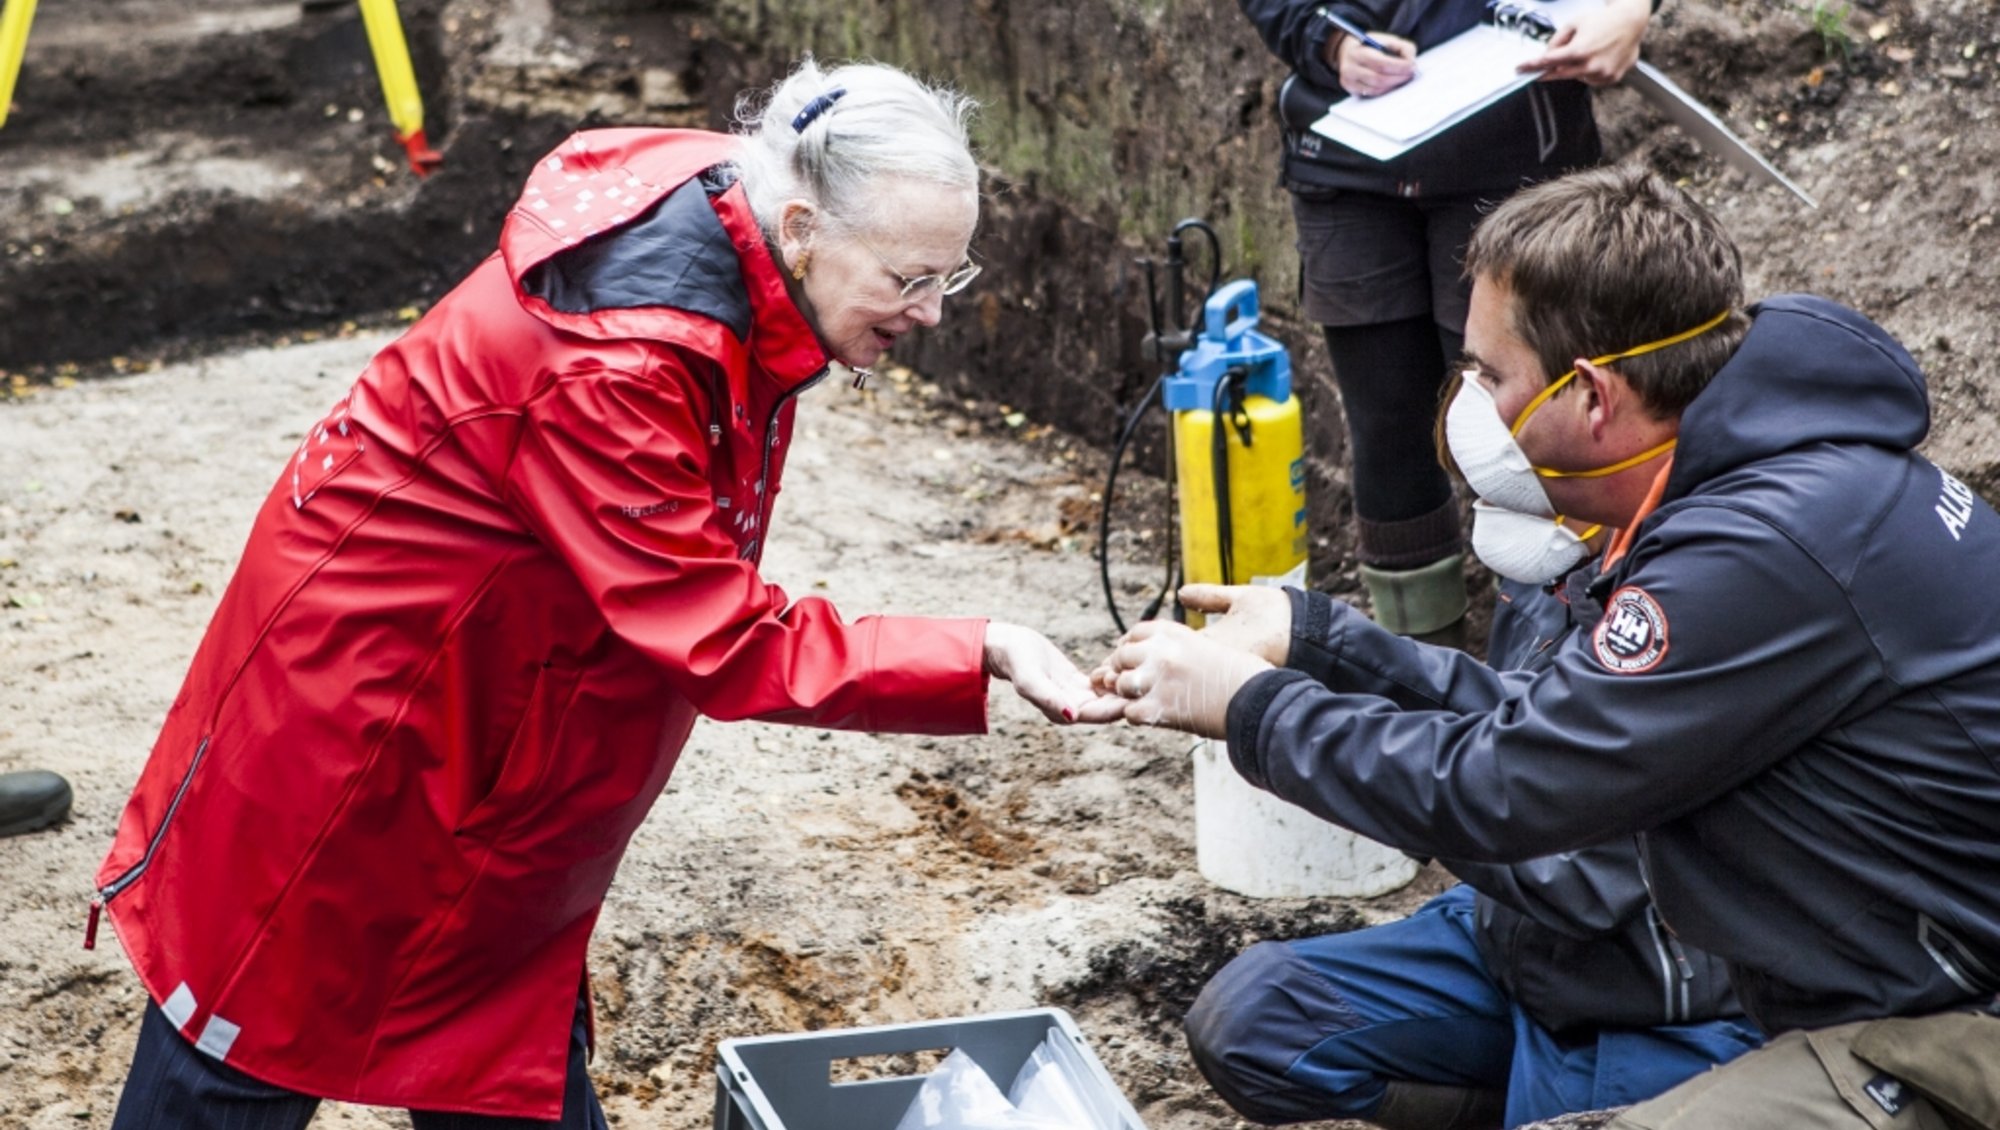 Dronning Margrethe, iført en rød regnfakke, står i en udgravning og en person i blåt regntøj og maske, viser hende noget, der er fundet i udgravningen. 